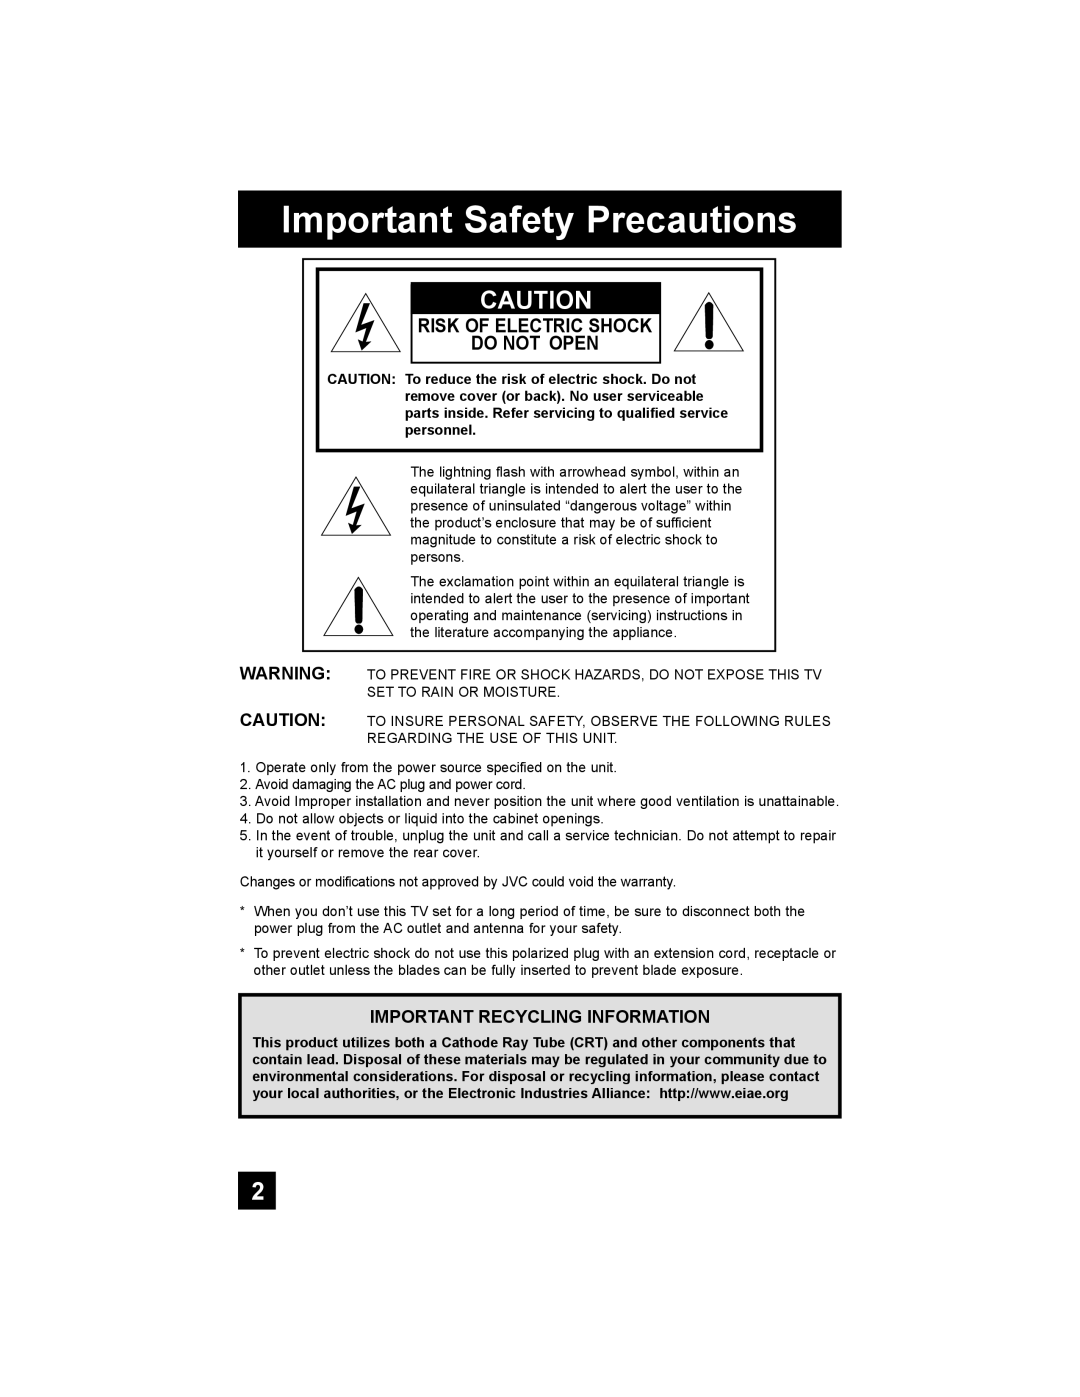 JVC AV 48P777, AV-48P787, AV-56P787, AV 56P777 manual Important Safety Precautions, Risk Of Electric Shock Do Not Open 